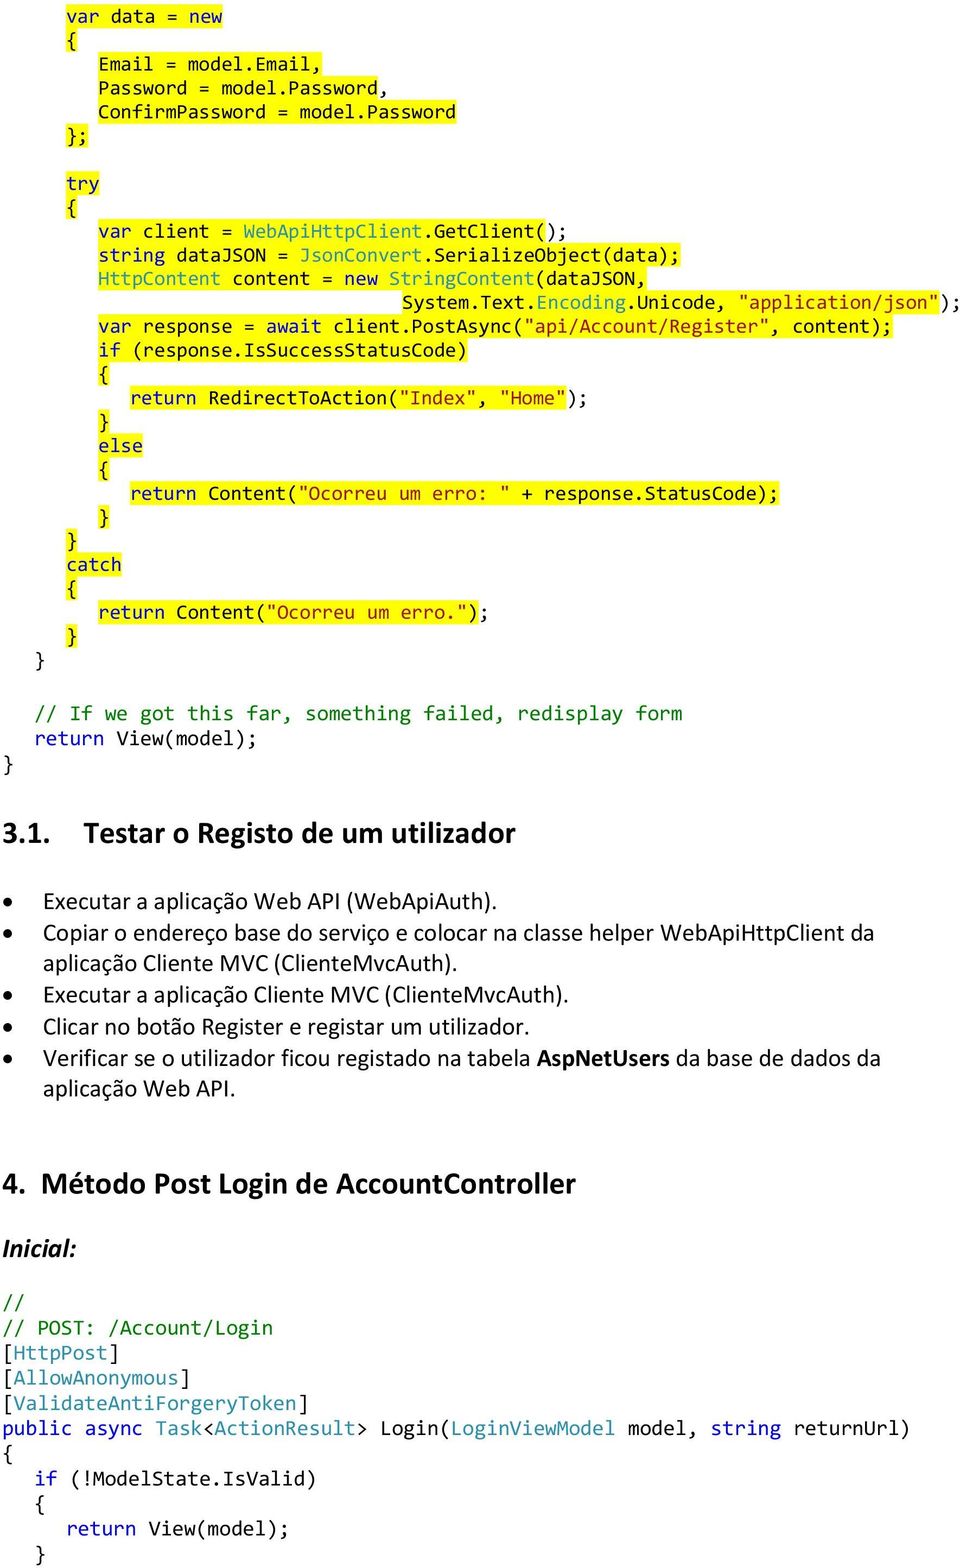 postasync("api/account/register", content); if (response.issuccessstatuscode) return RedirectToAction("Index", "Home"); else return Content("Ocorreu um erro: " + response.